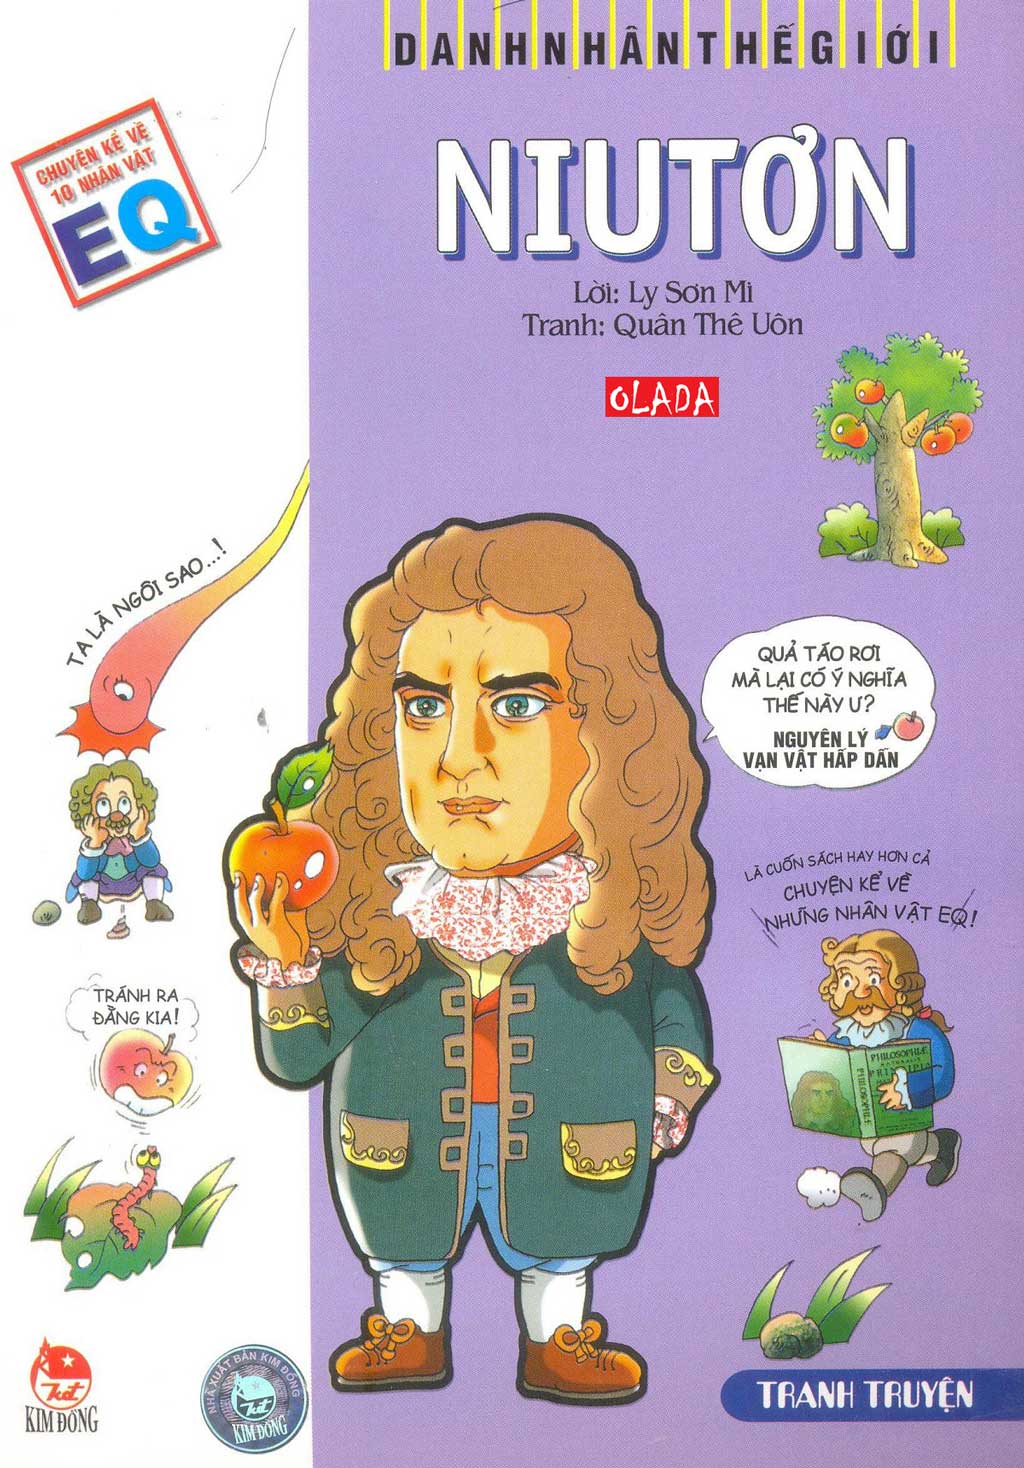 Danh nhân thế giới Newton